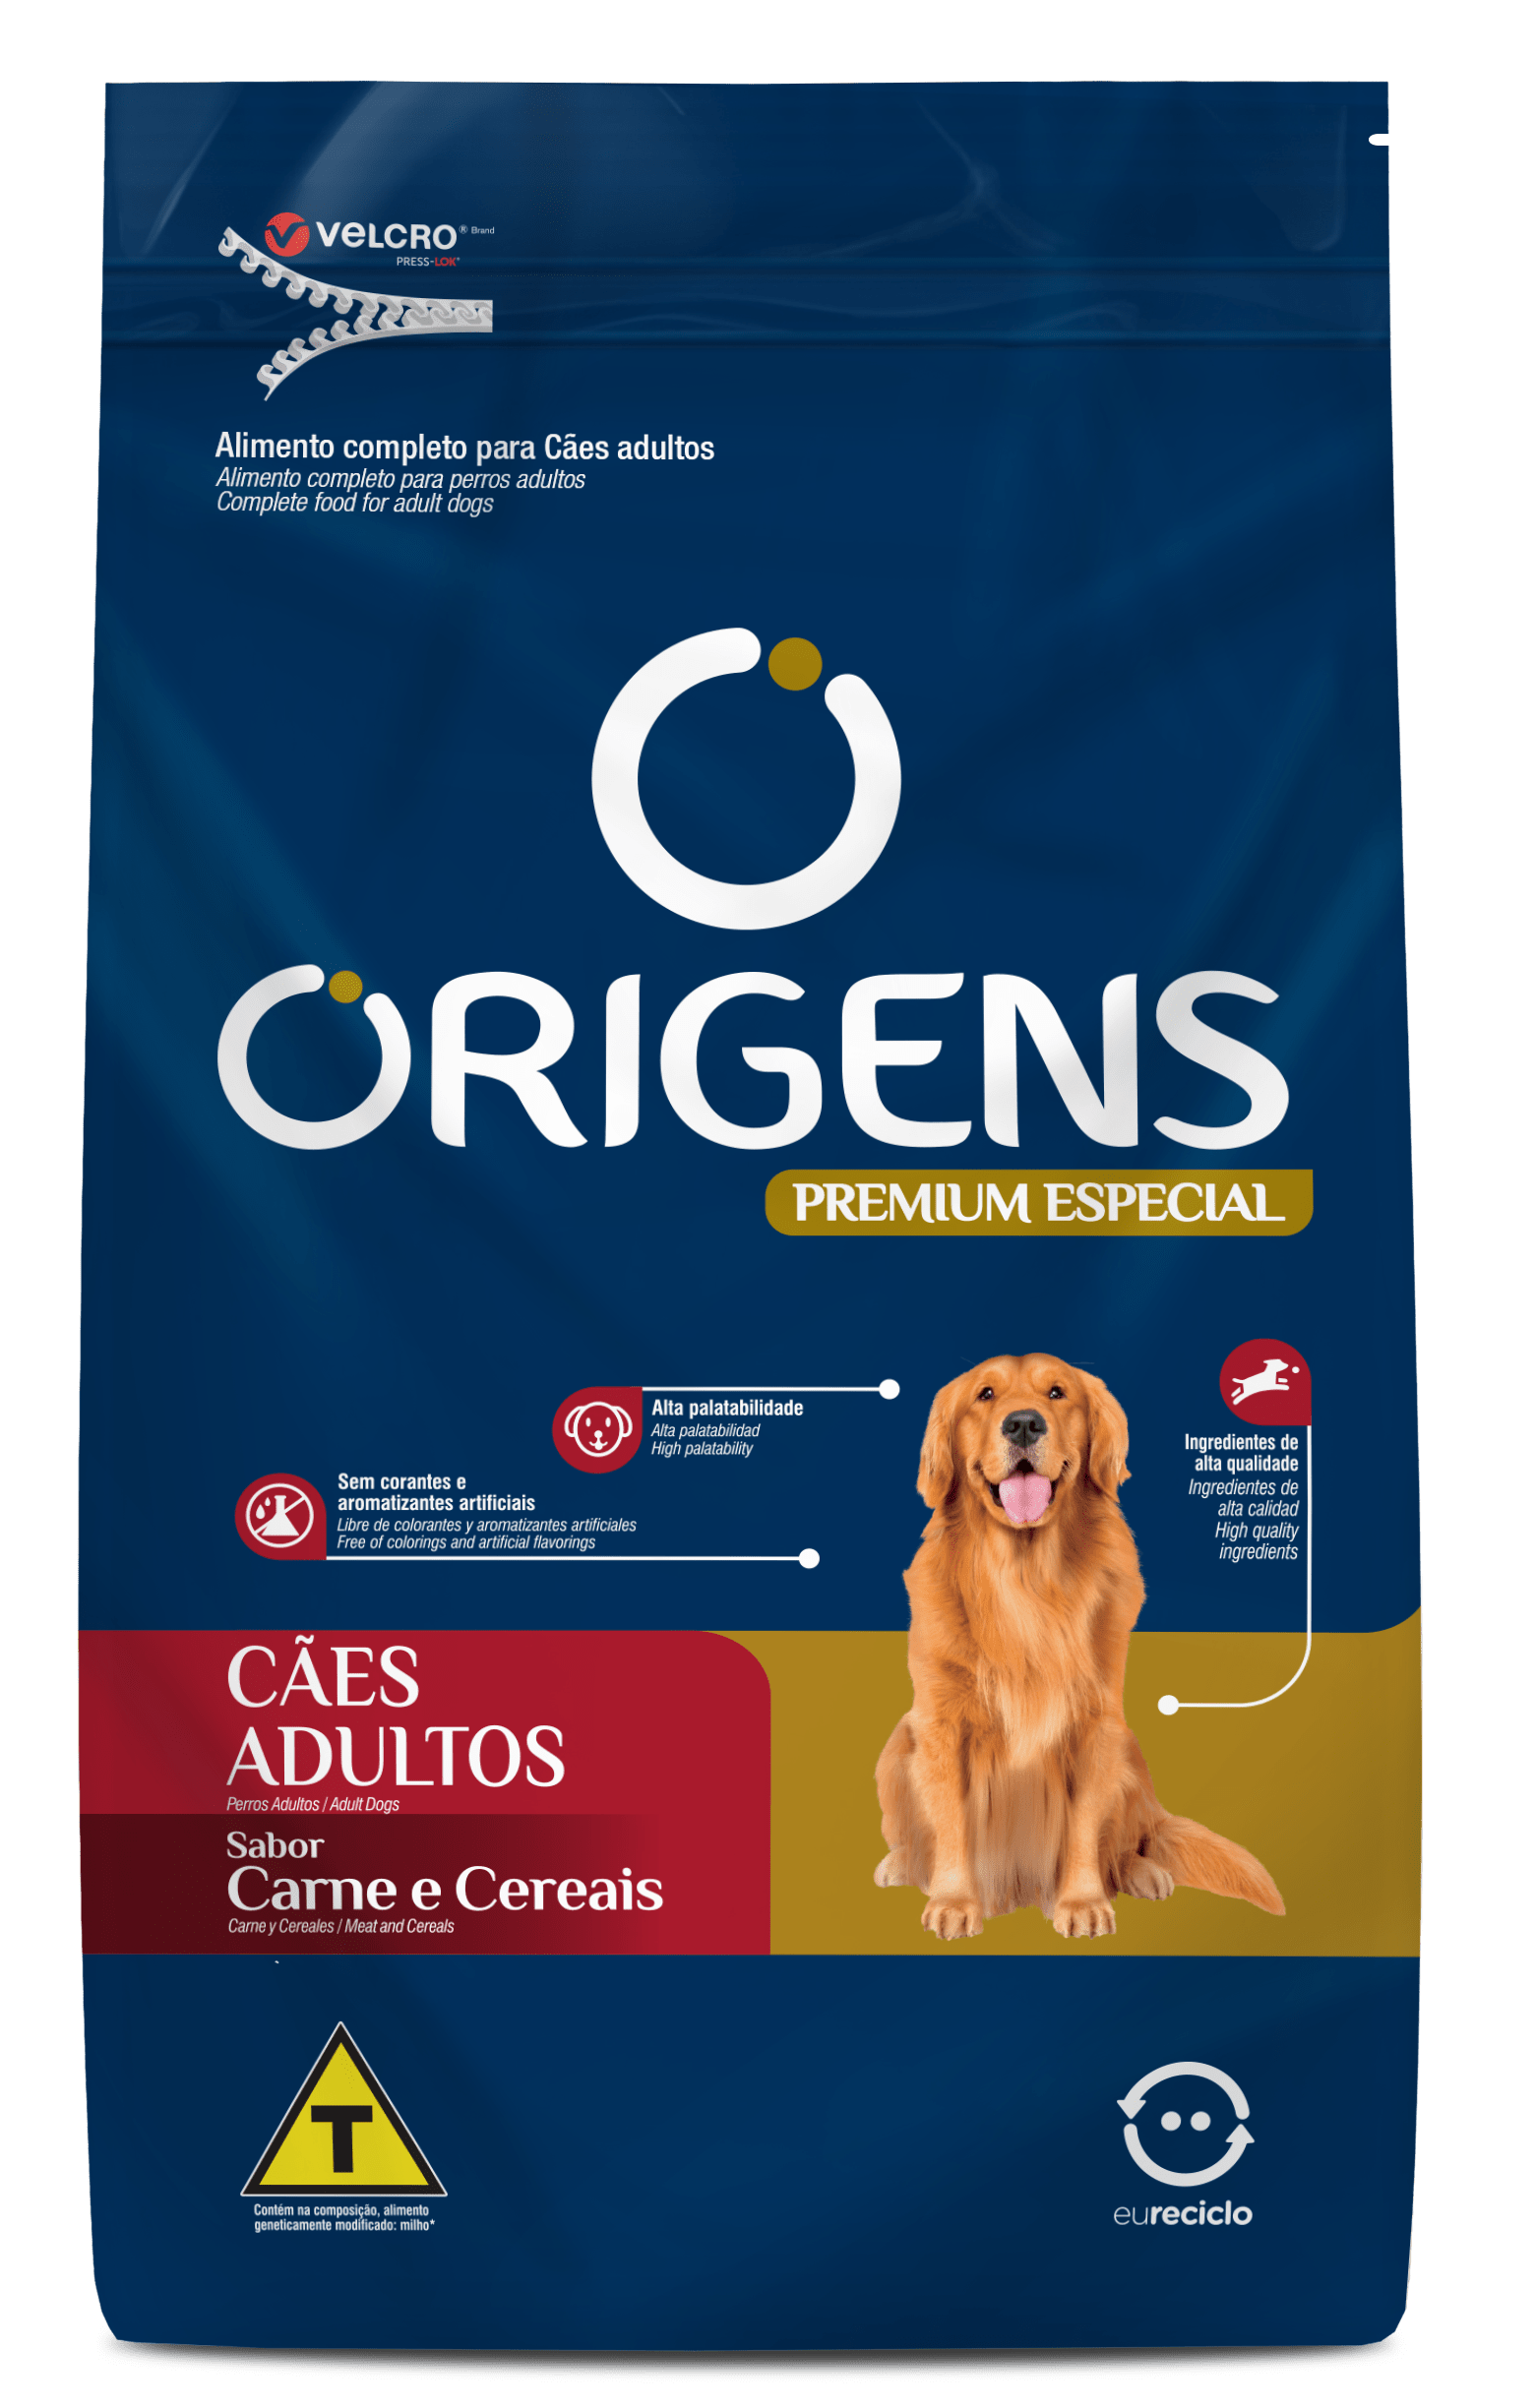 Origens Premium Especial Adult Dogs Beef and Cereals Flavor